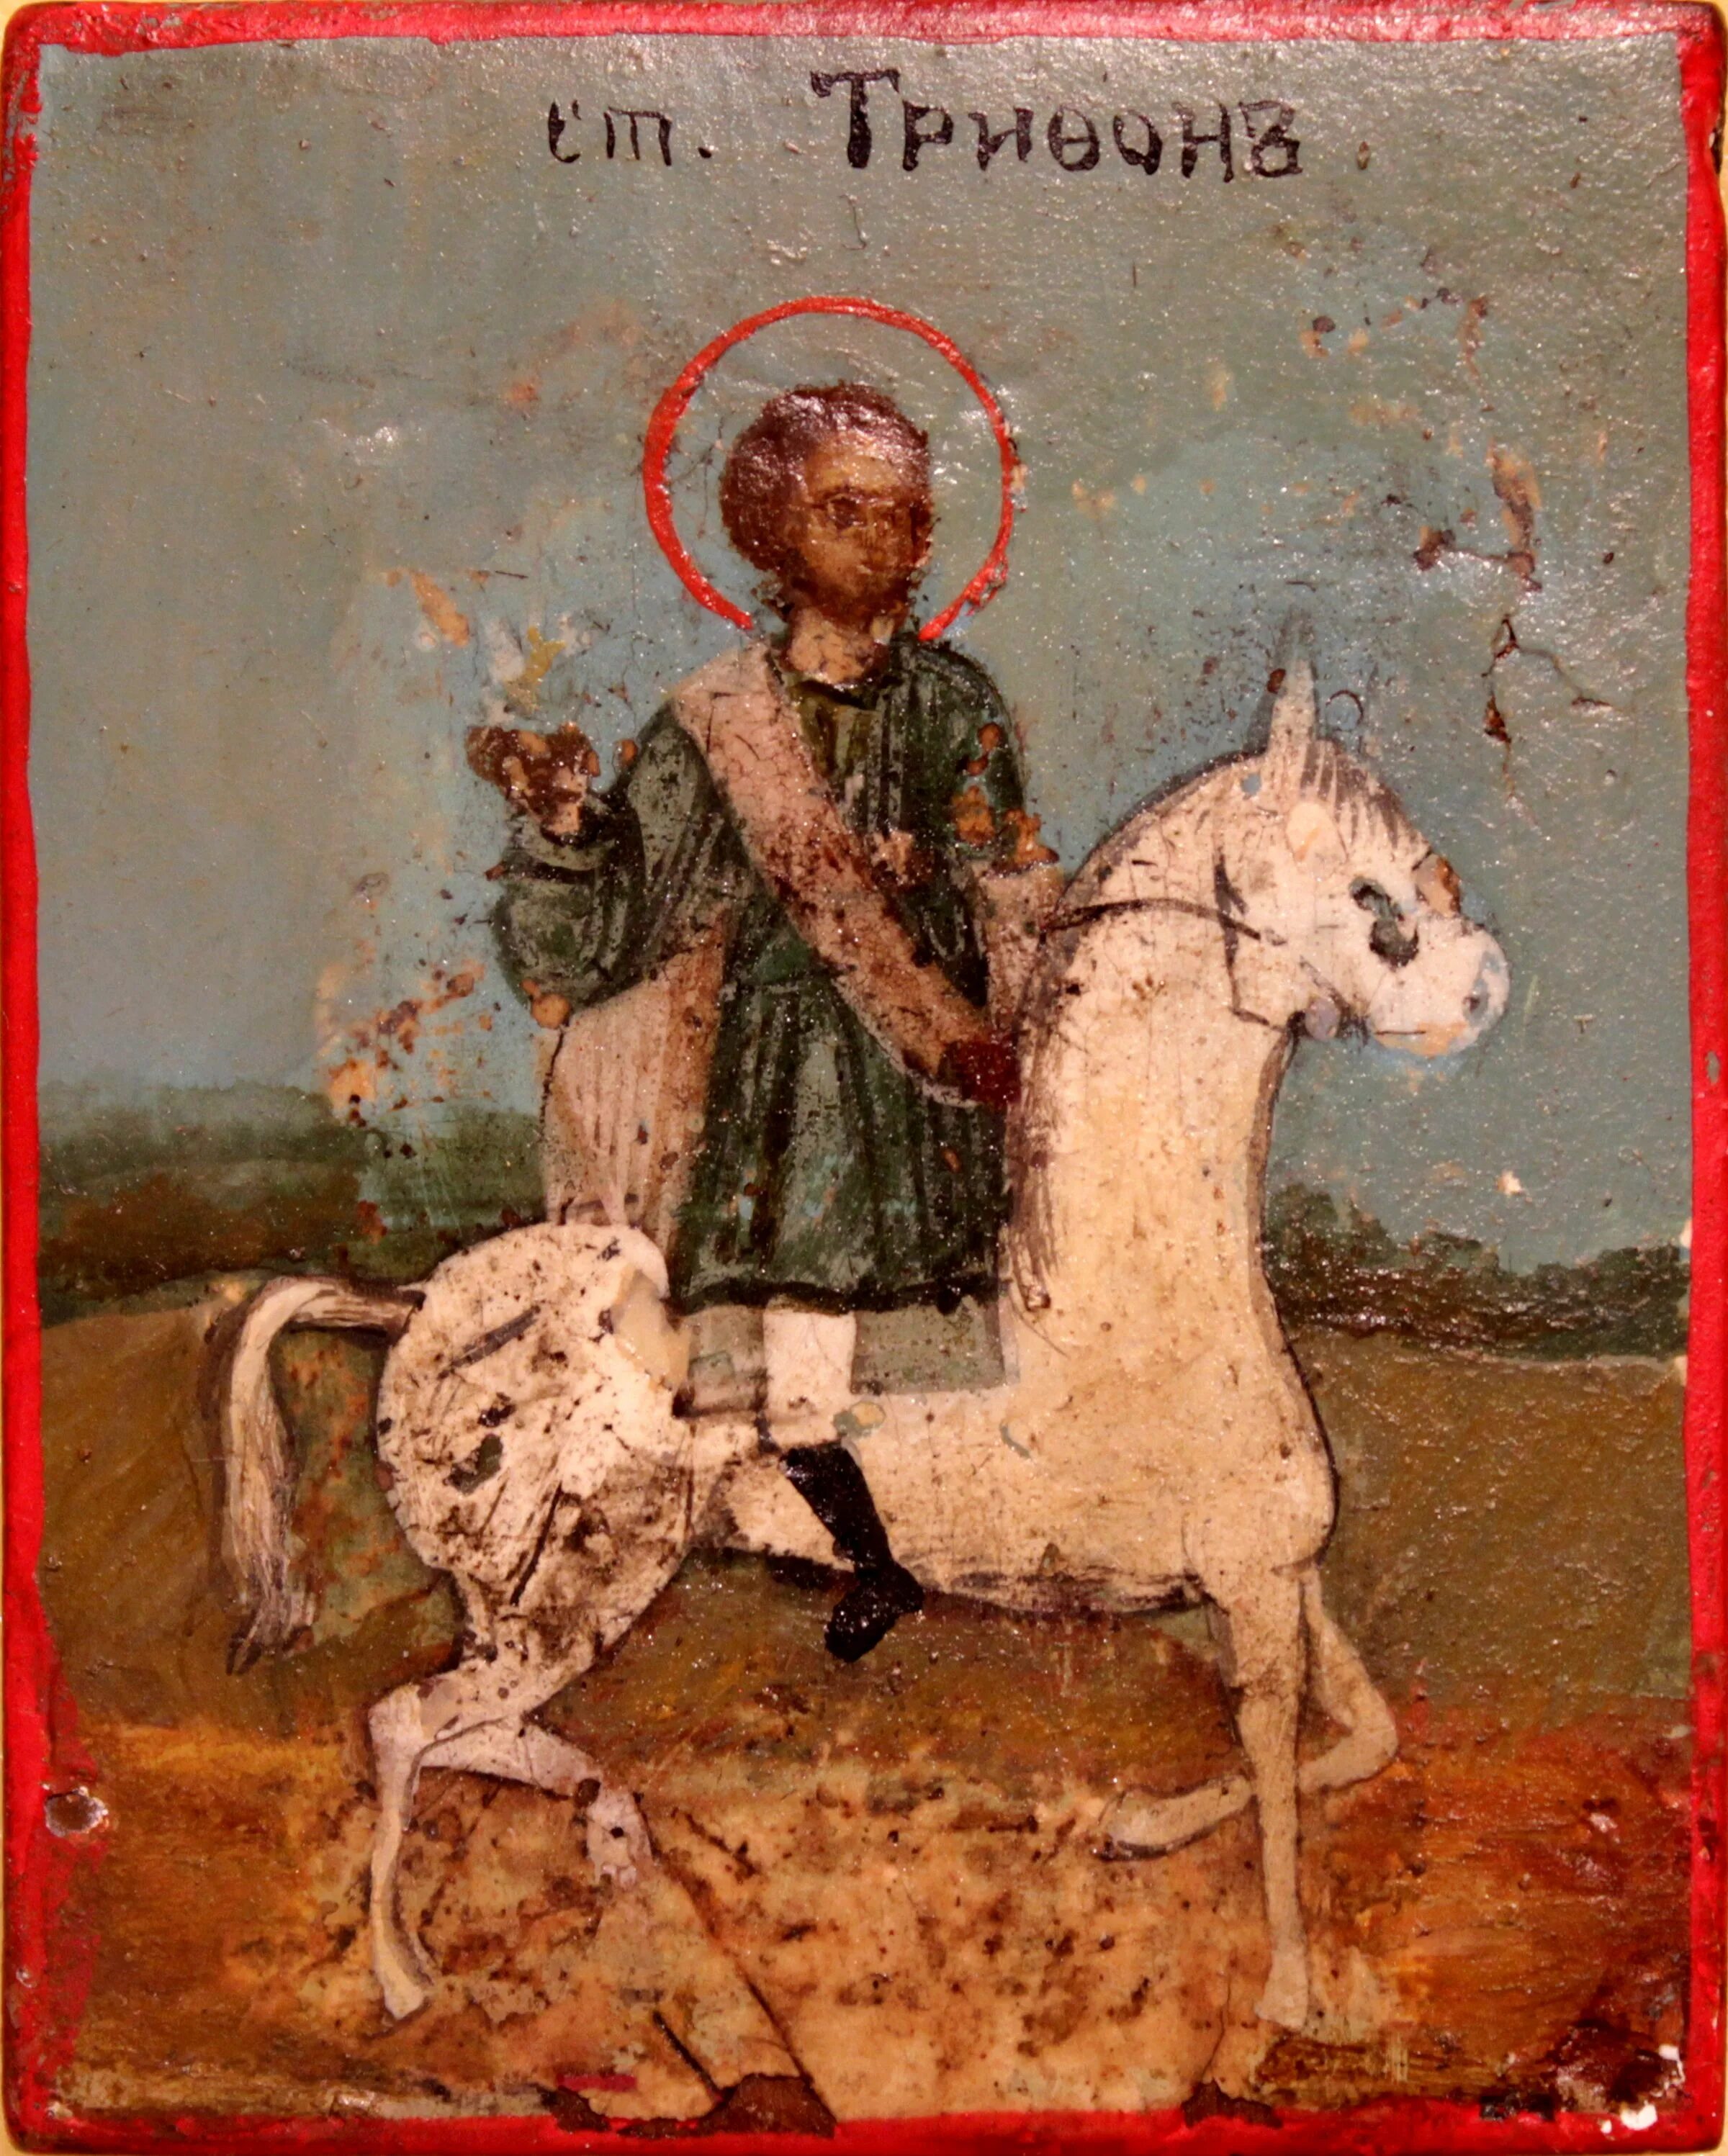 Икона Святого Трифона покровителя охотников. 14 февраля святого трифона покровителя охотников